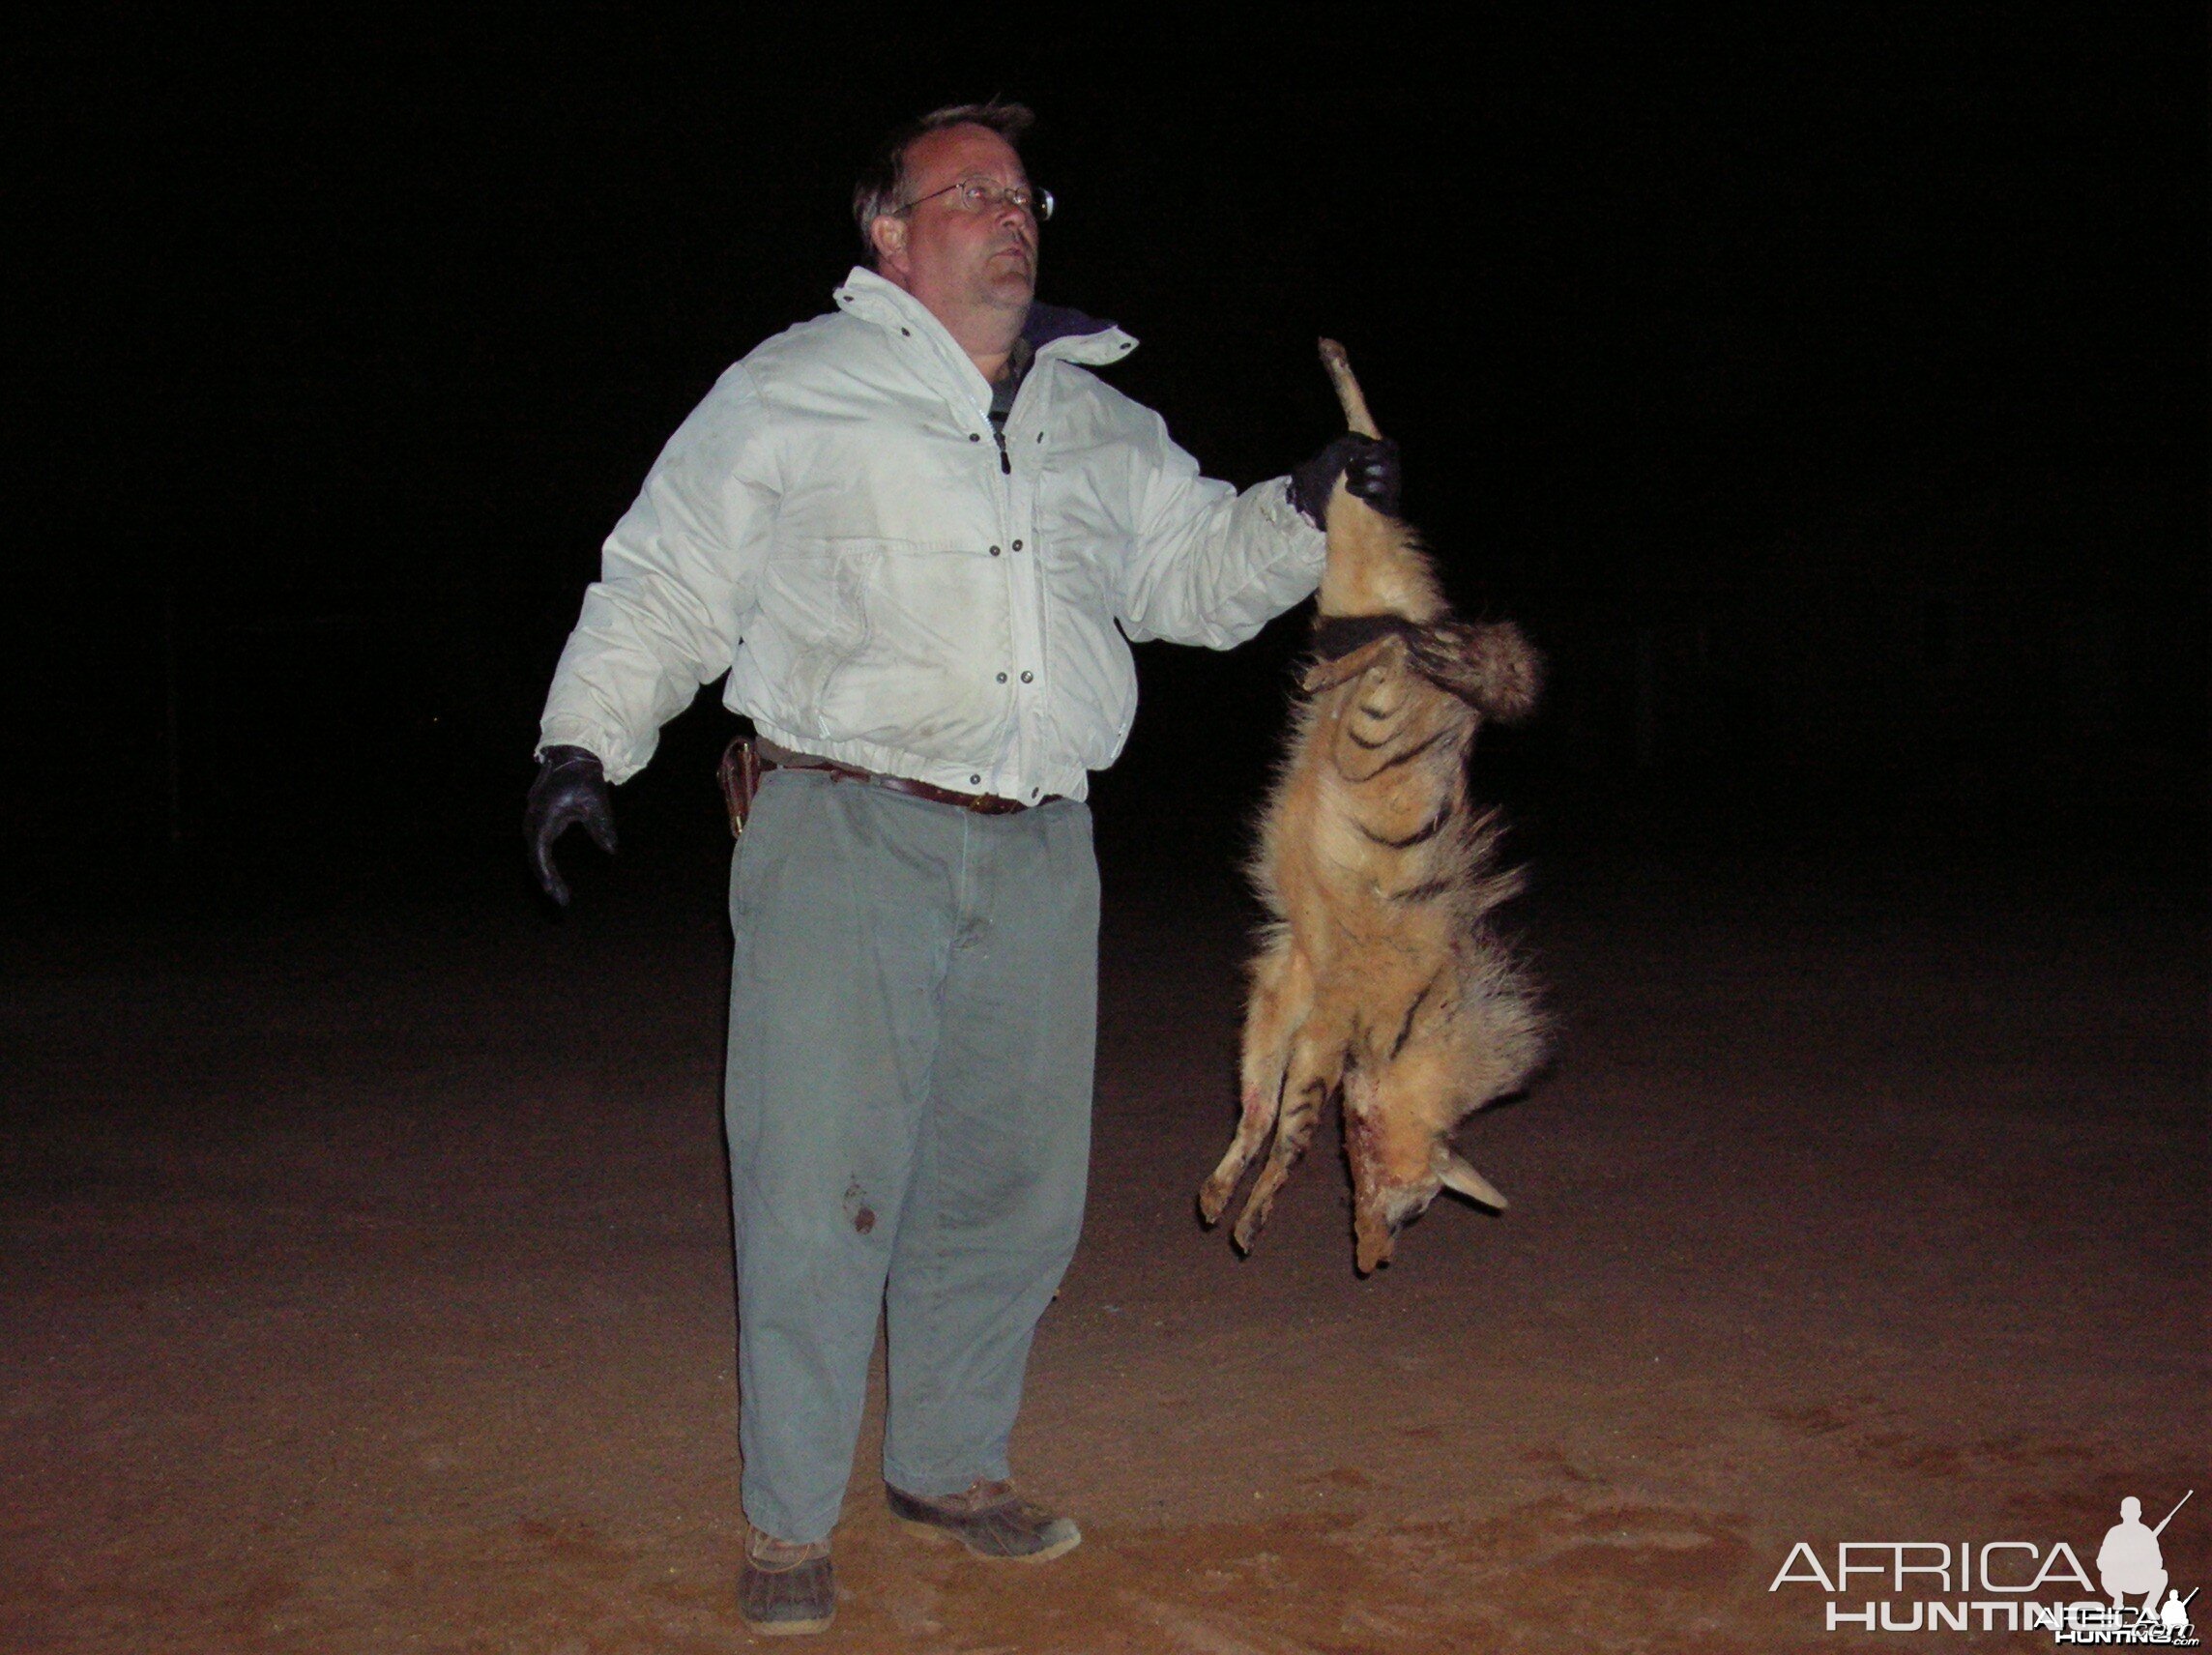 Hunting Aardwolf in Namibia